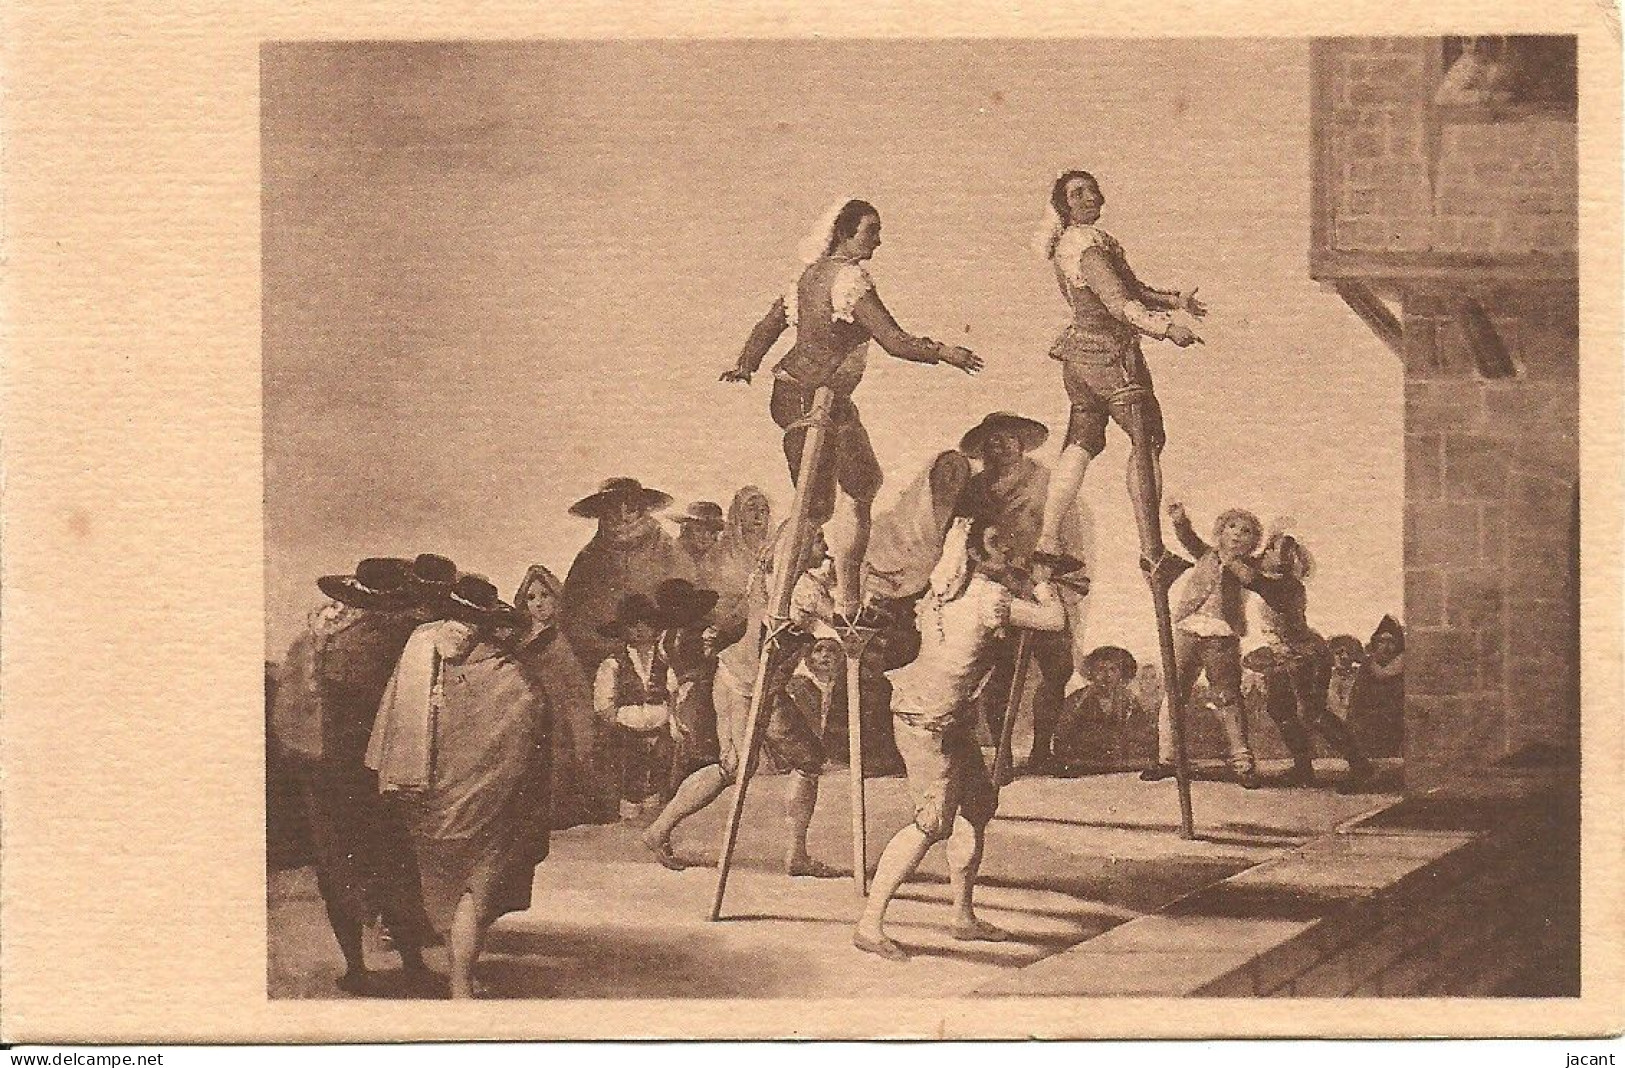 Espana - Goya - Tableaux - Lot avec 20 cartes - toutes les images